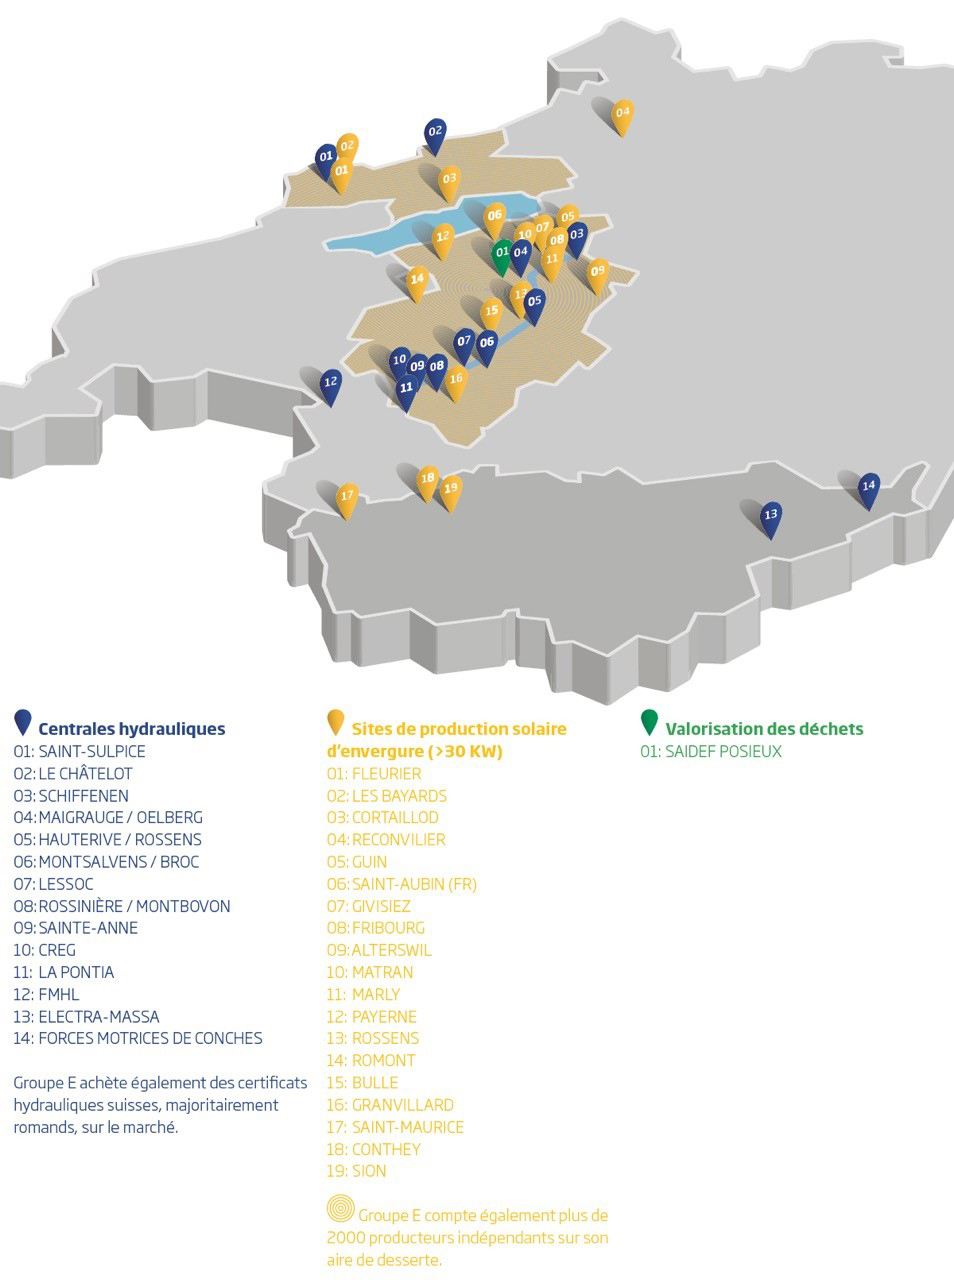  carte des sites de productions électricité Groupe E